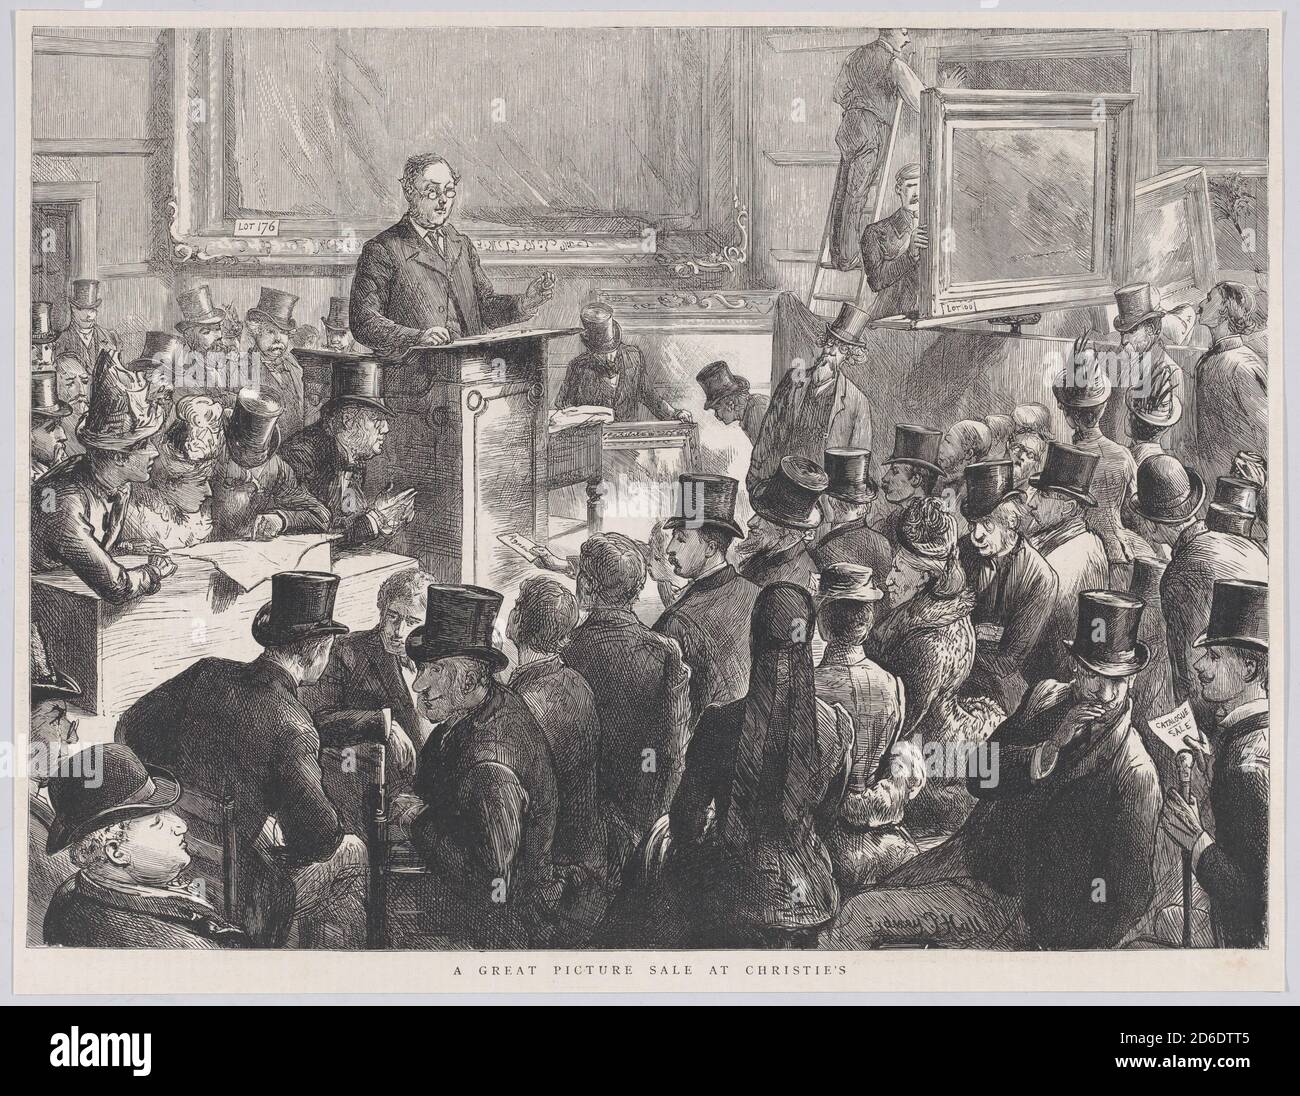 Una grande vendita di immagini a Christie's, da "The Graphic", 10 settembre 1887. Foto Stock